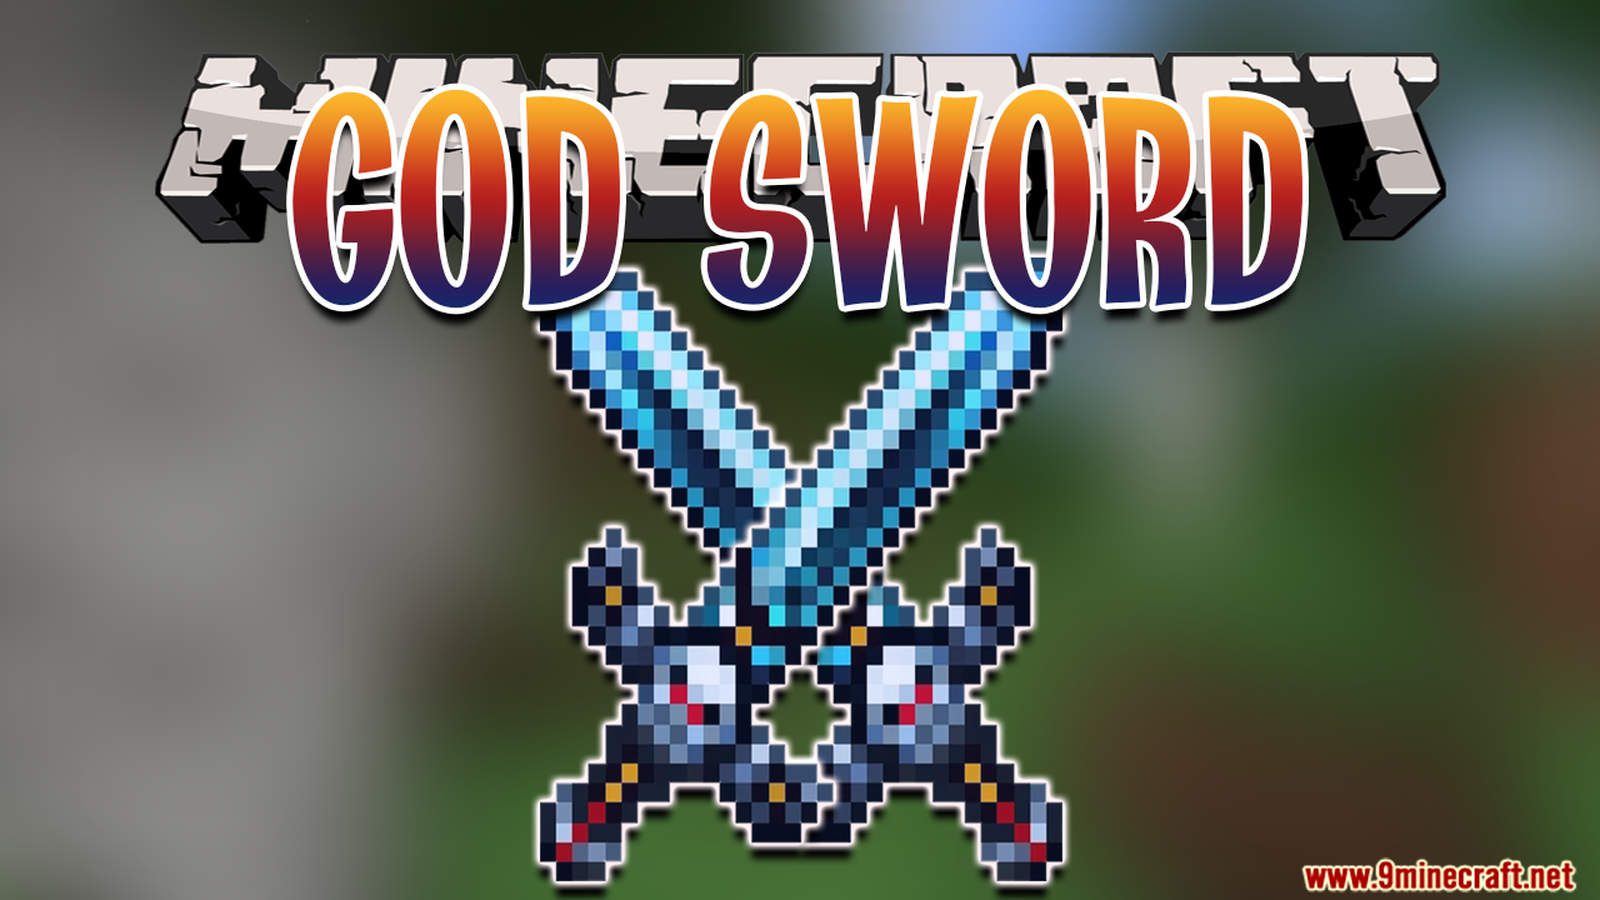 God Sword Data Pack (1.18.2, 1.17.1) - OP Sword In Minecraft! 1